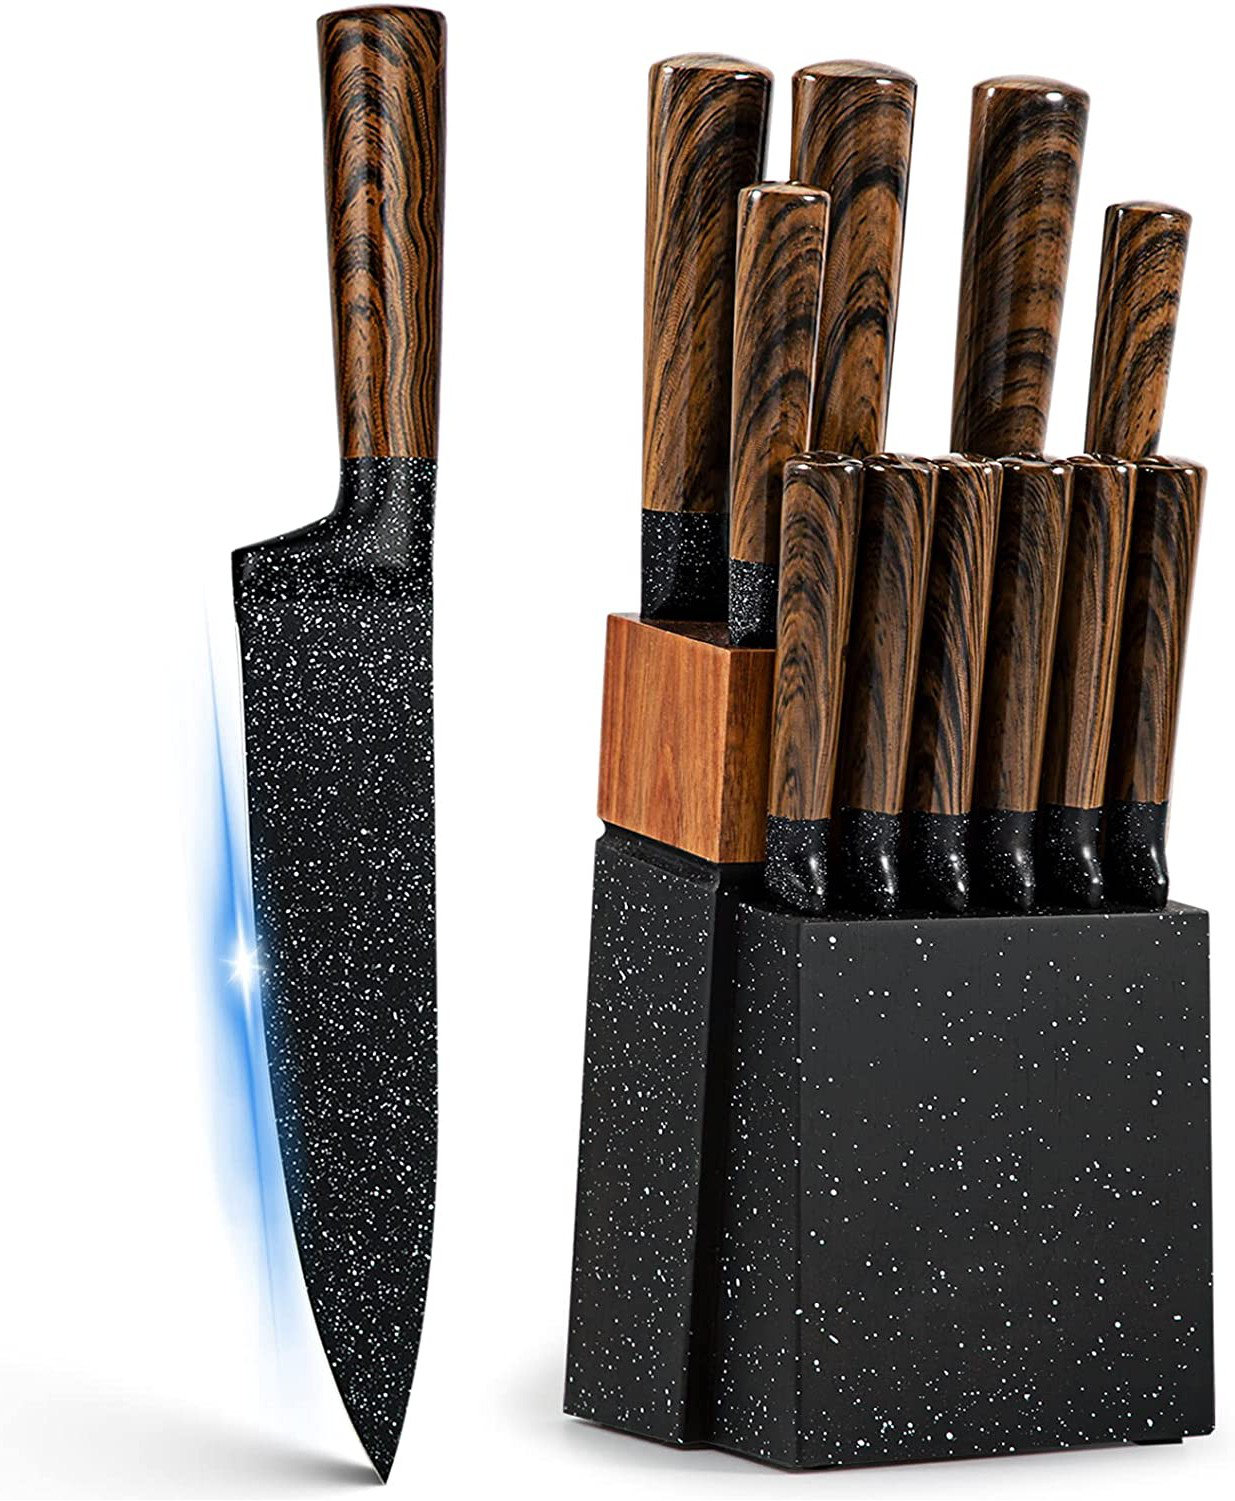 https://assets.wfcdn.com/im/76311948/compr-r85/2304/230415544/melissa-6-piece-high-carbon-stainless-steel-knife-block-set.jpg